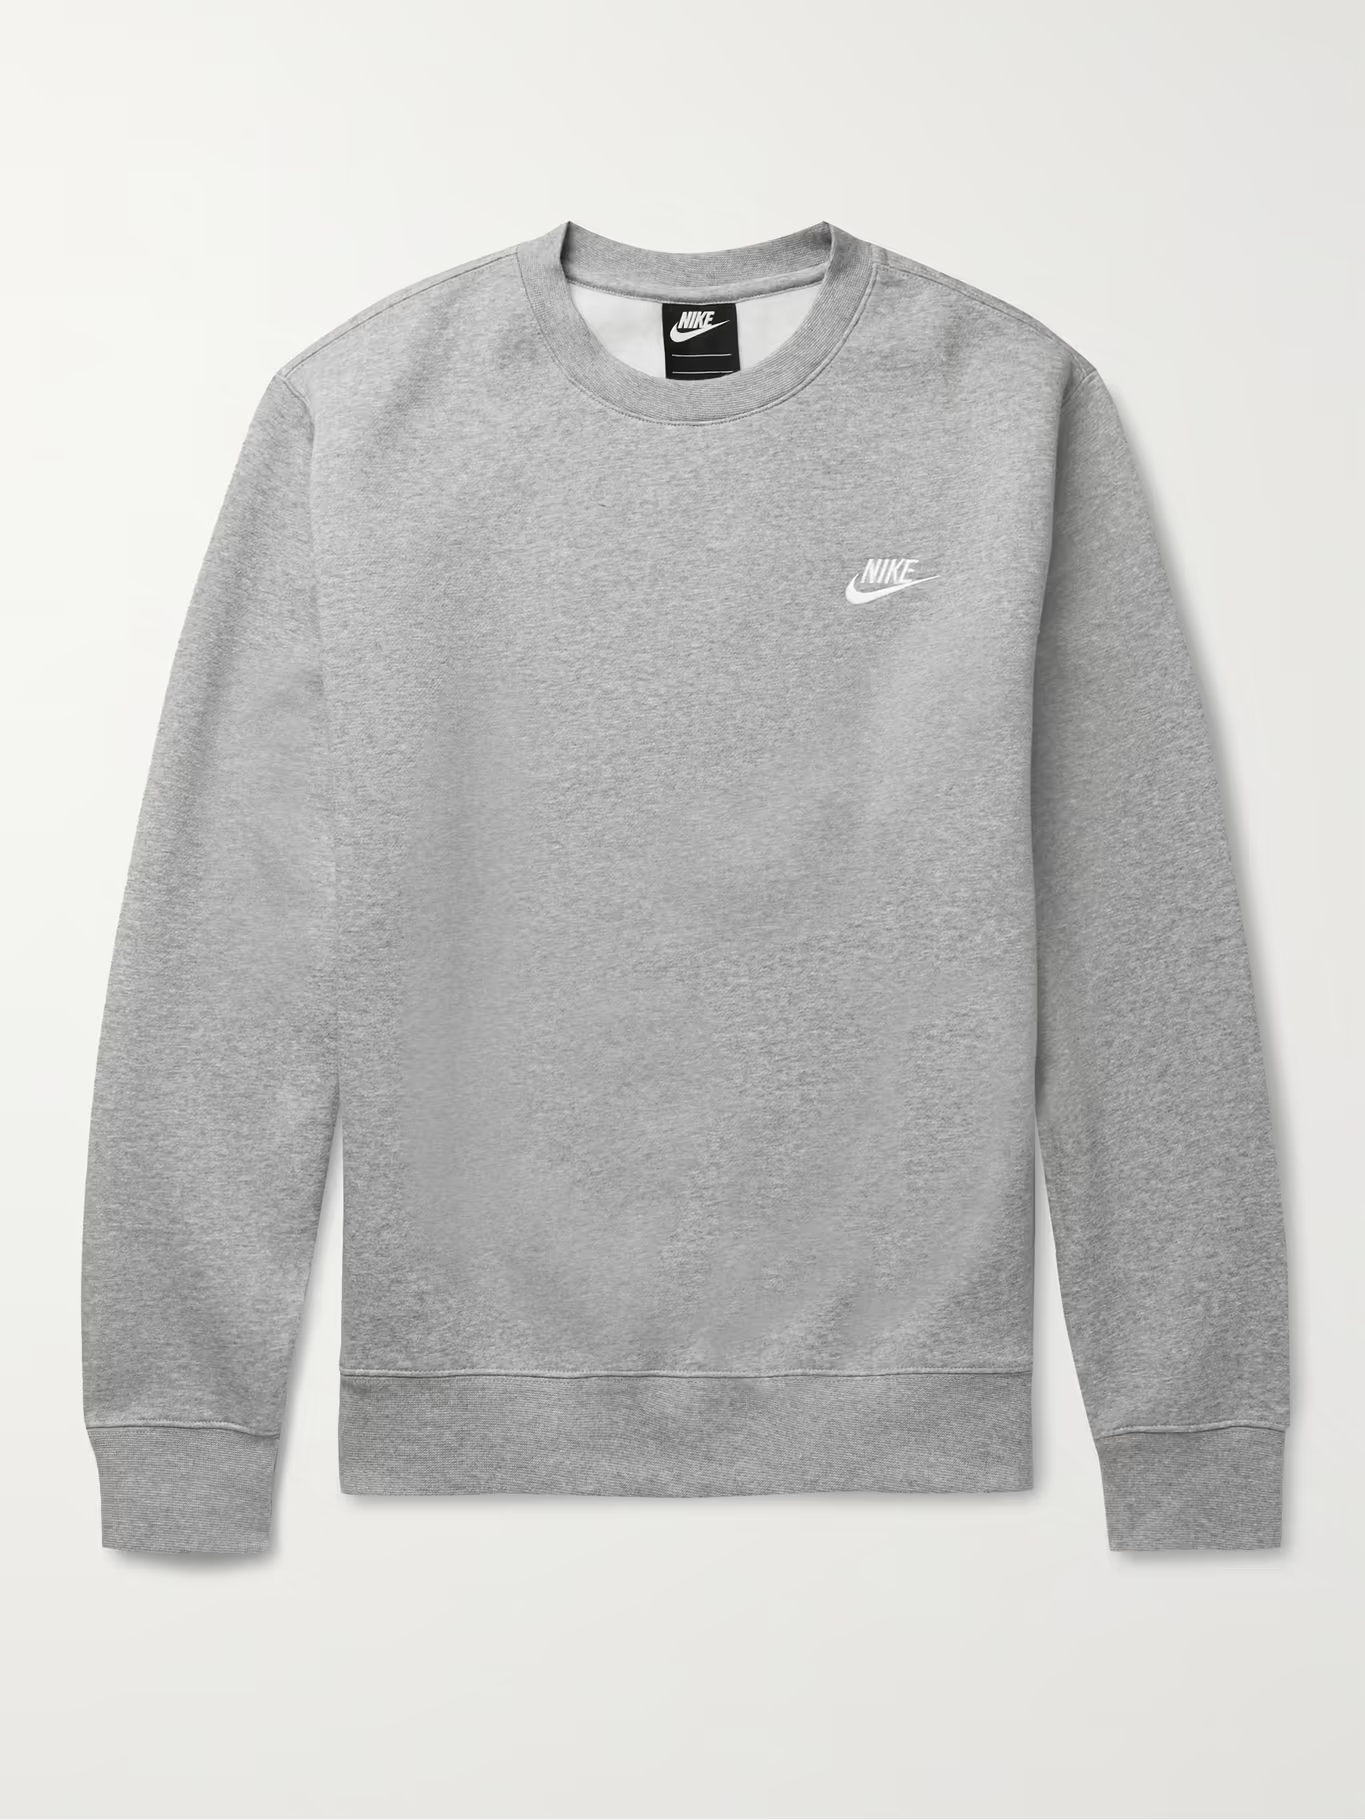 50% OFF the Nike Sportswear Club Fleece Crewneck Sweatshirts — Sneaker ...